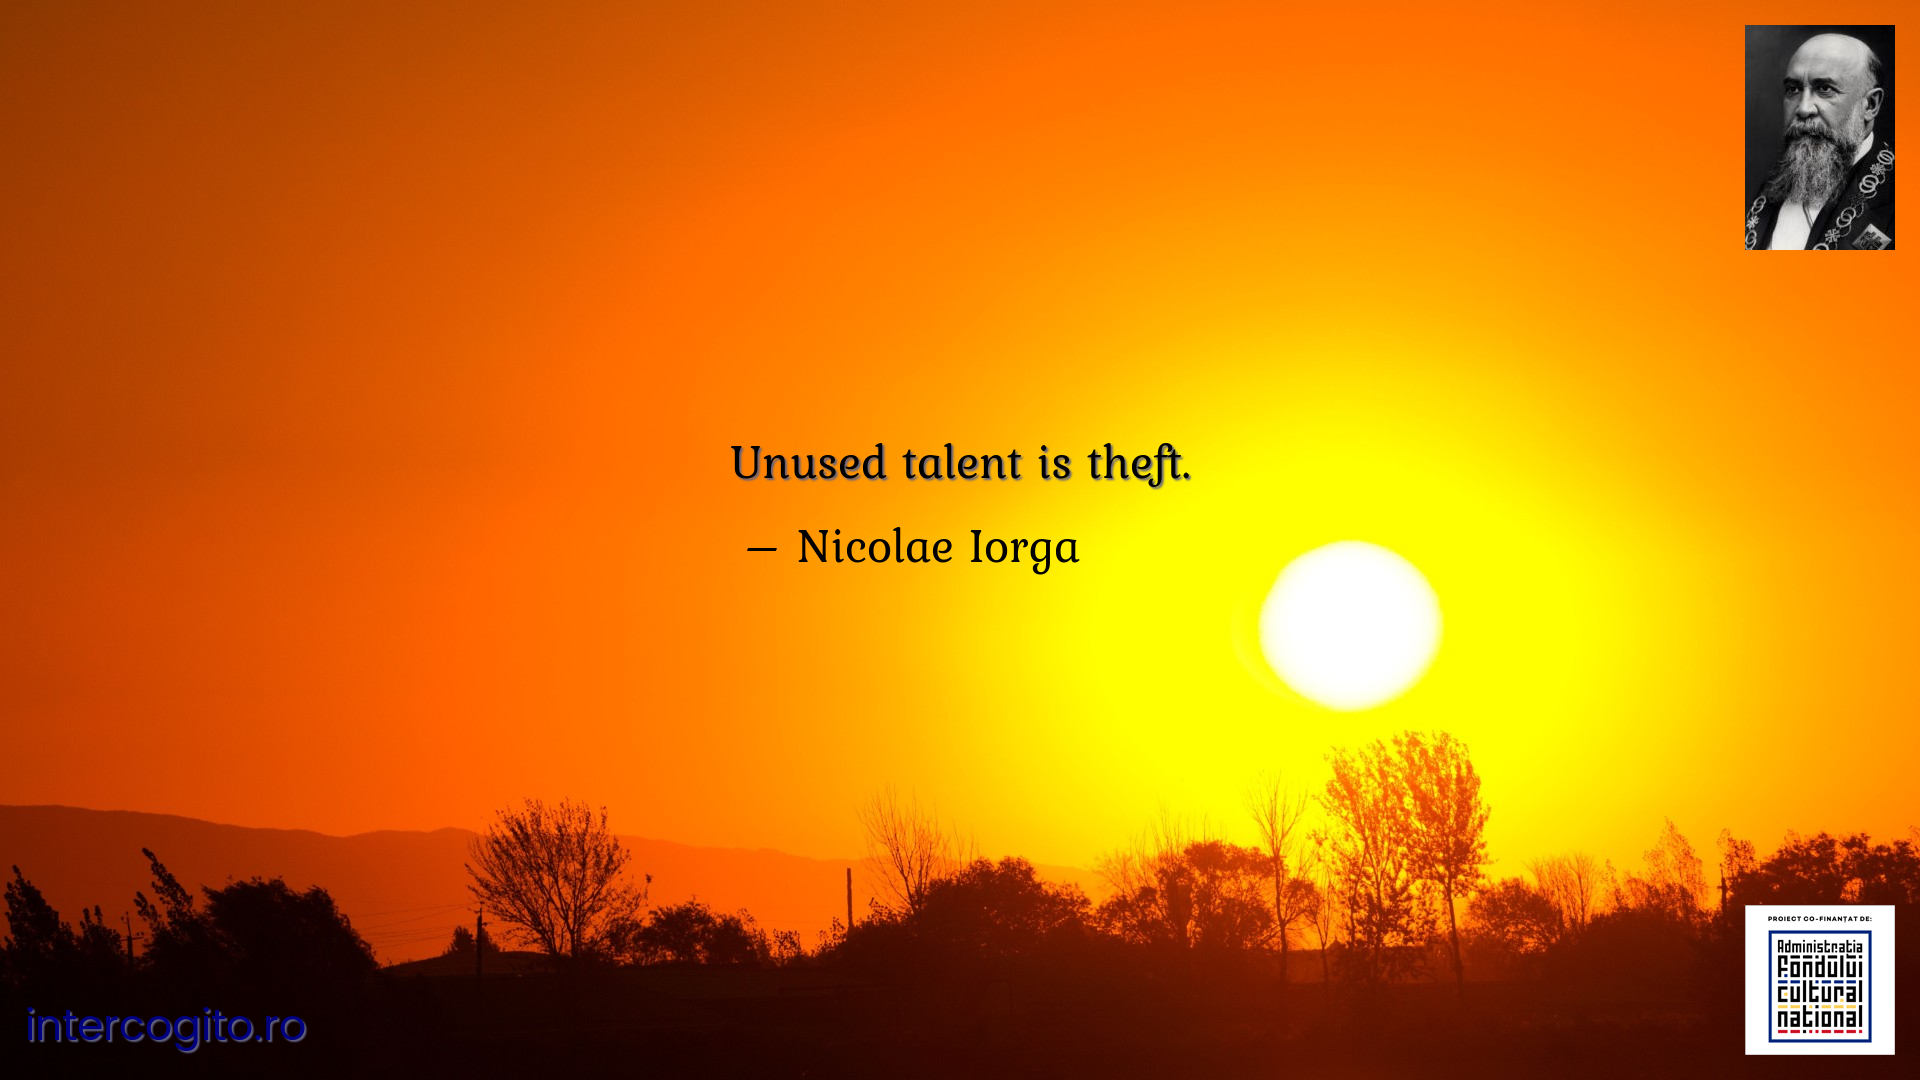 Unused talent is theft.